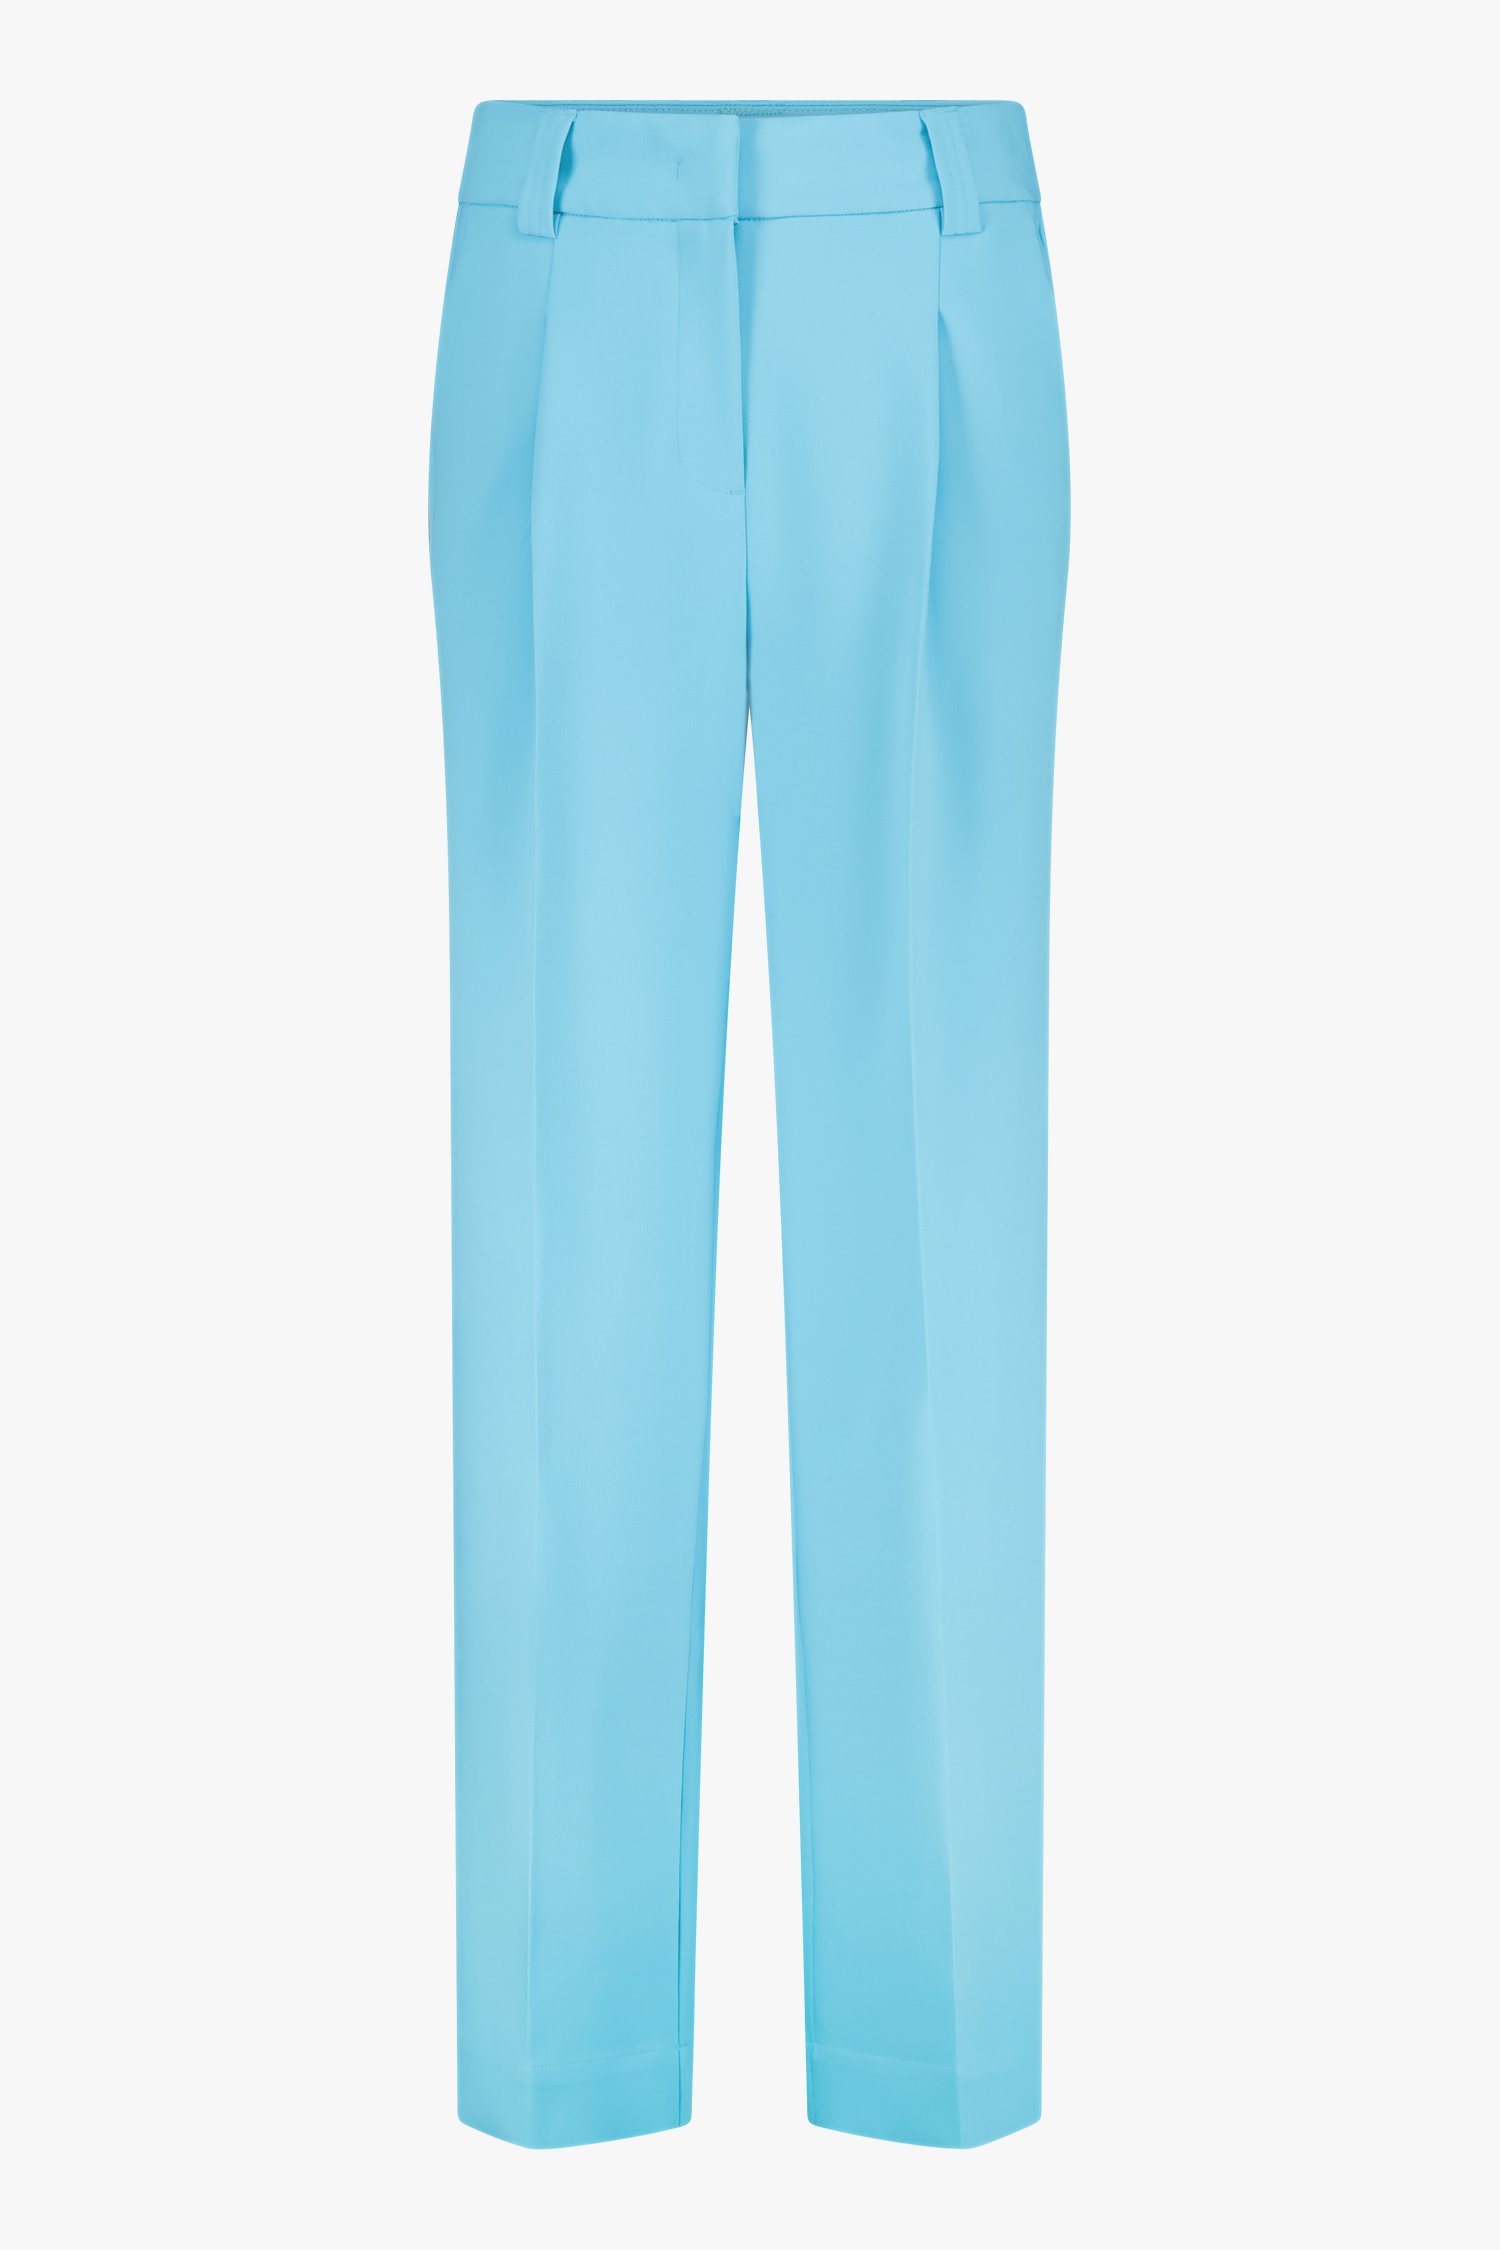 Pantalon habillé turquoise  de Louise pour Femmes